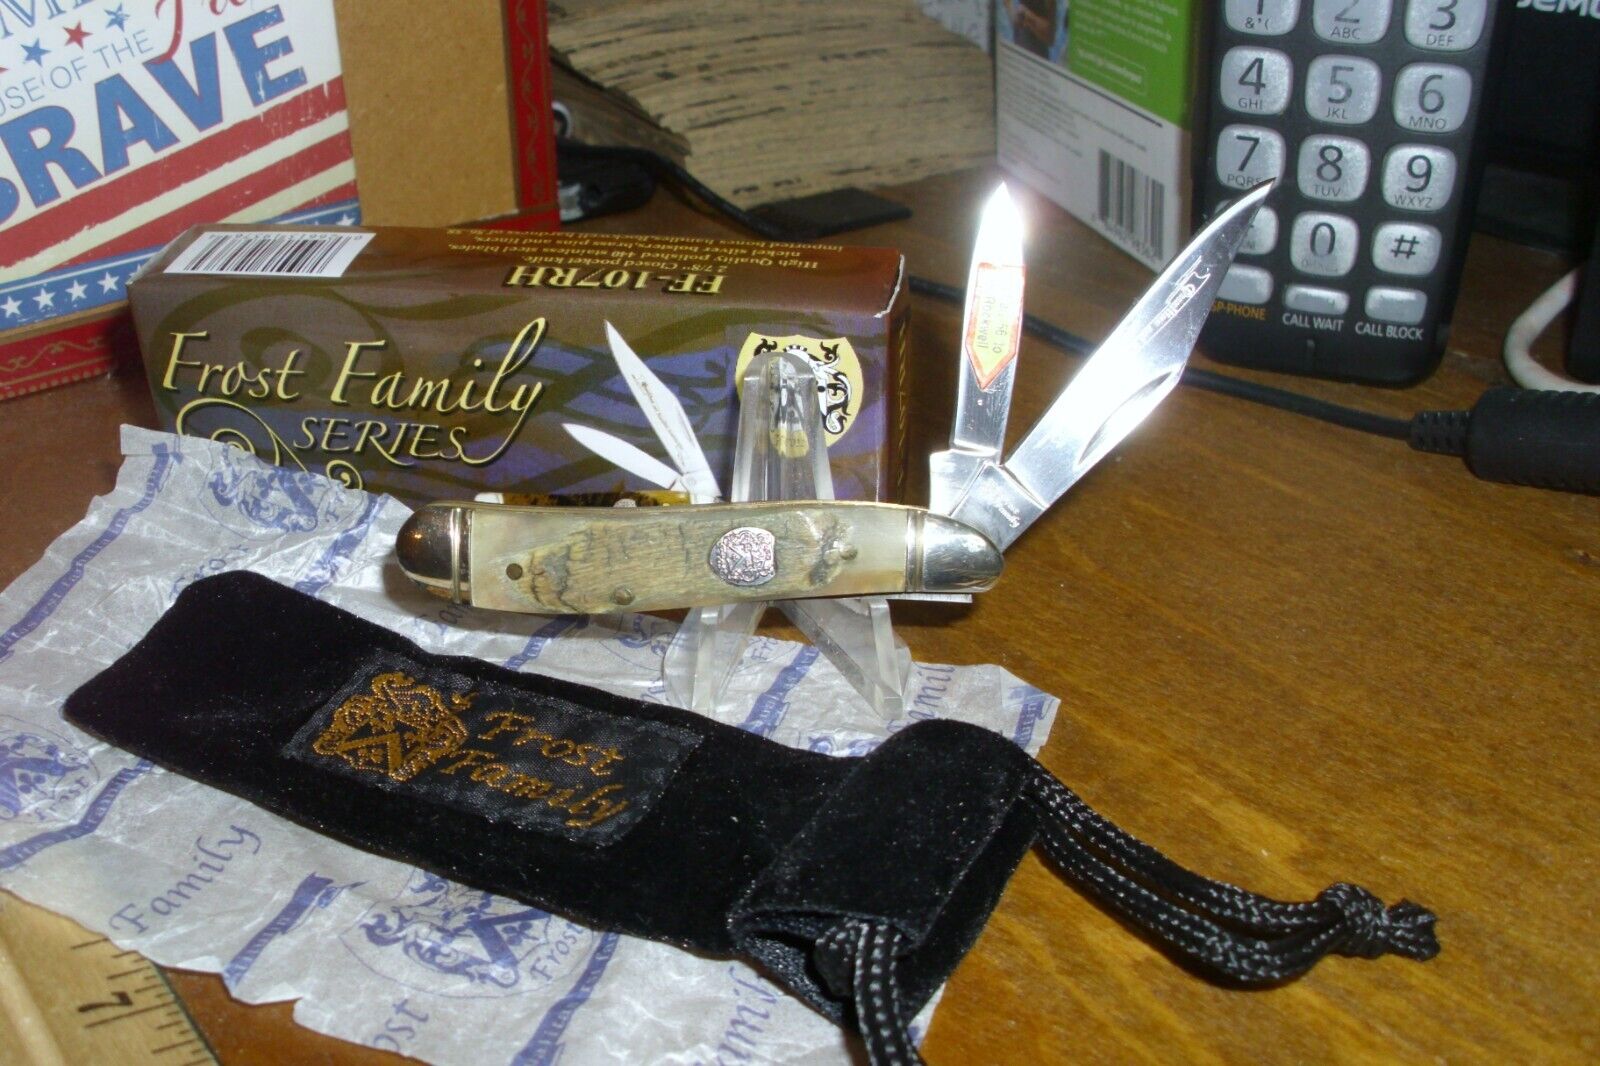 Frost Family Series - Little Peanut Folding Pocket Knife FF-107RH